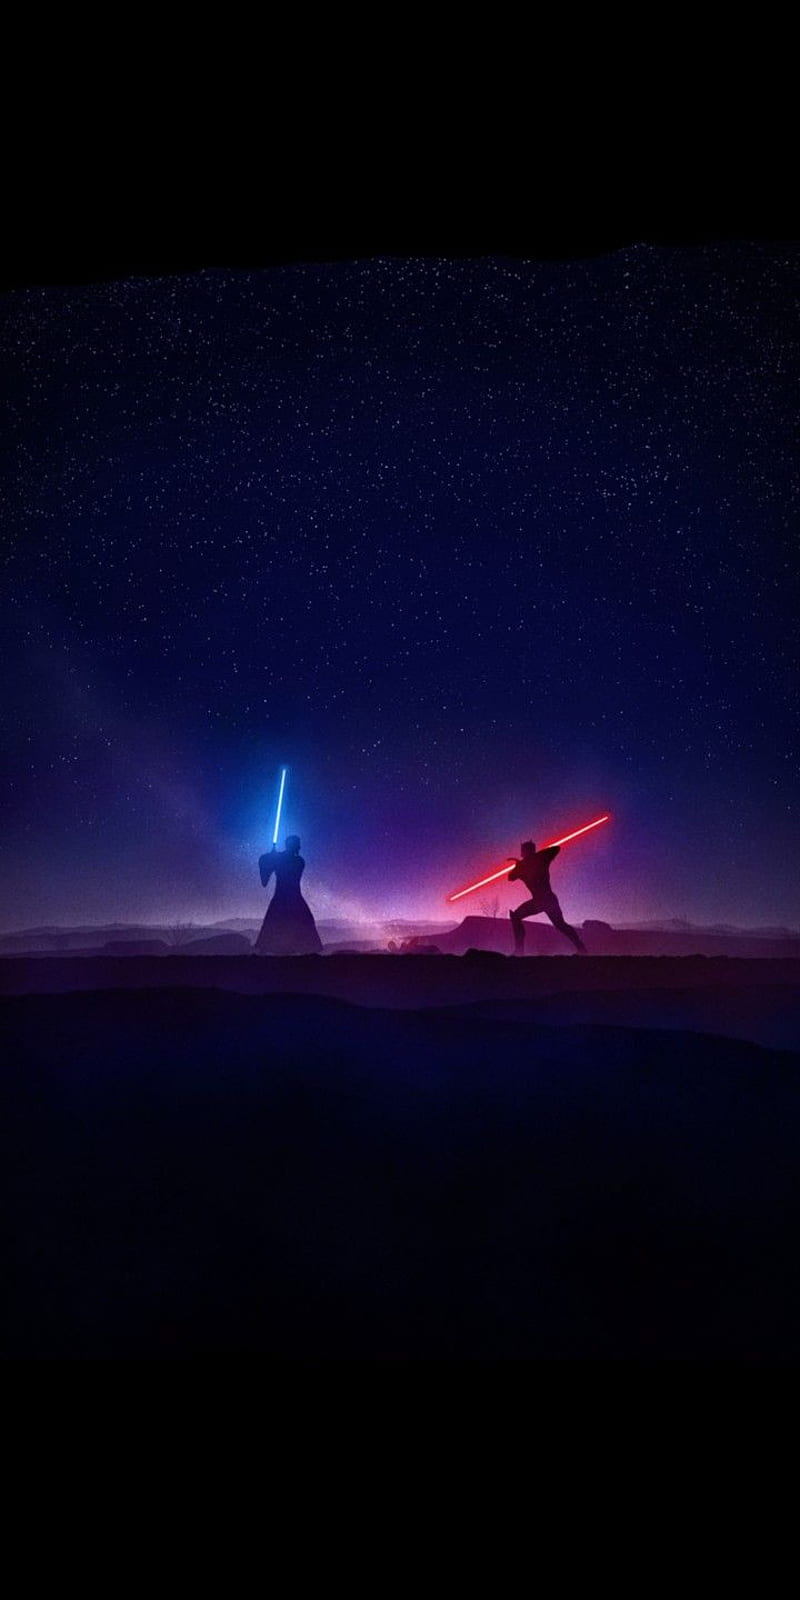 Trận đấu ánh sáng kiếm giữa Kenobi và Maul là một màn trình diễn đầy hồi hộp và tuyệt vời trong chiến tranh giữa các vì sao. Hãy ngắm nhìn các chi tiết tuyệt đẹp trong hình ảnh này để cảm nhận sự xuất sắc của nghệ thuật diễn xuất và hiệu ứng kỹ xảo.